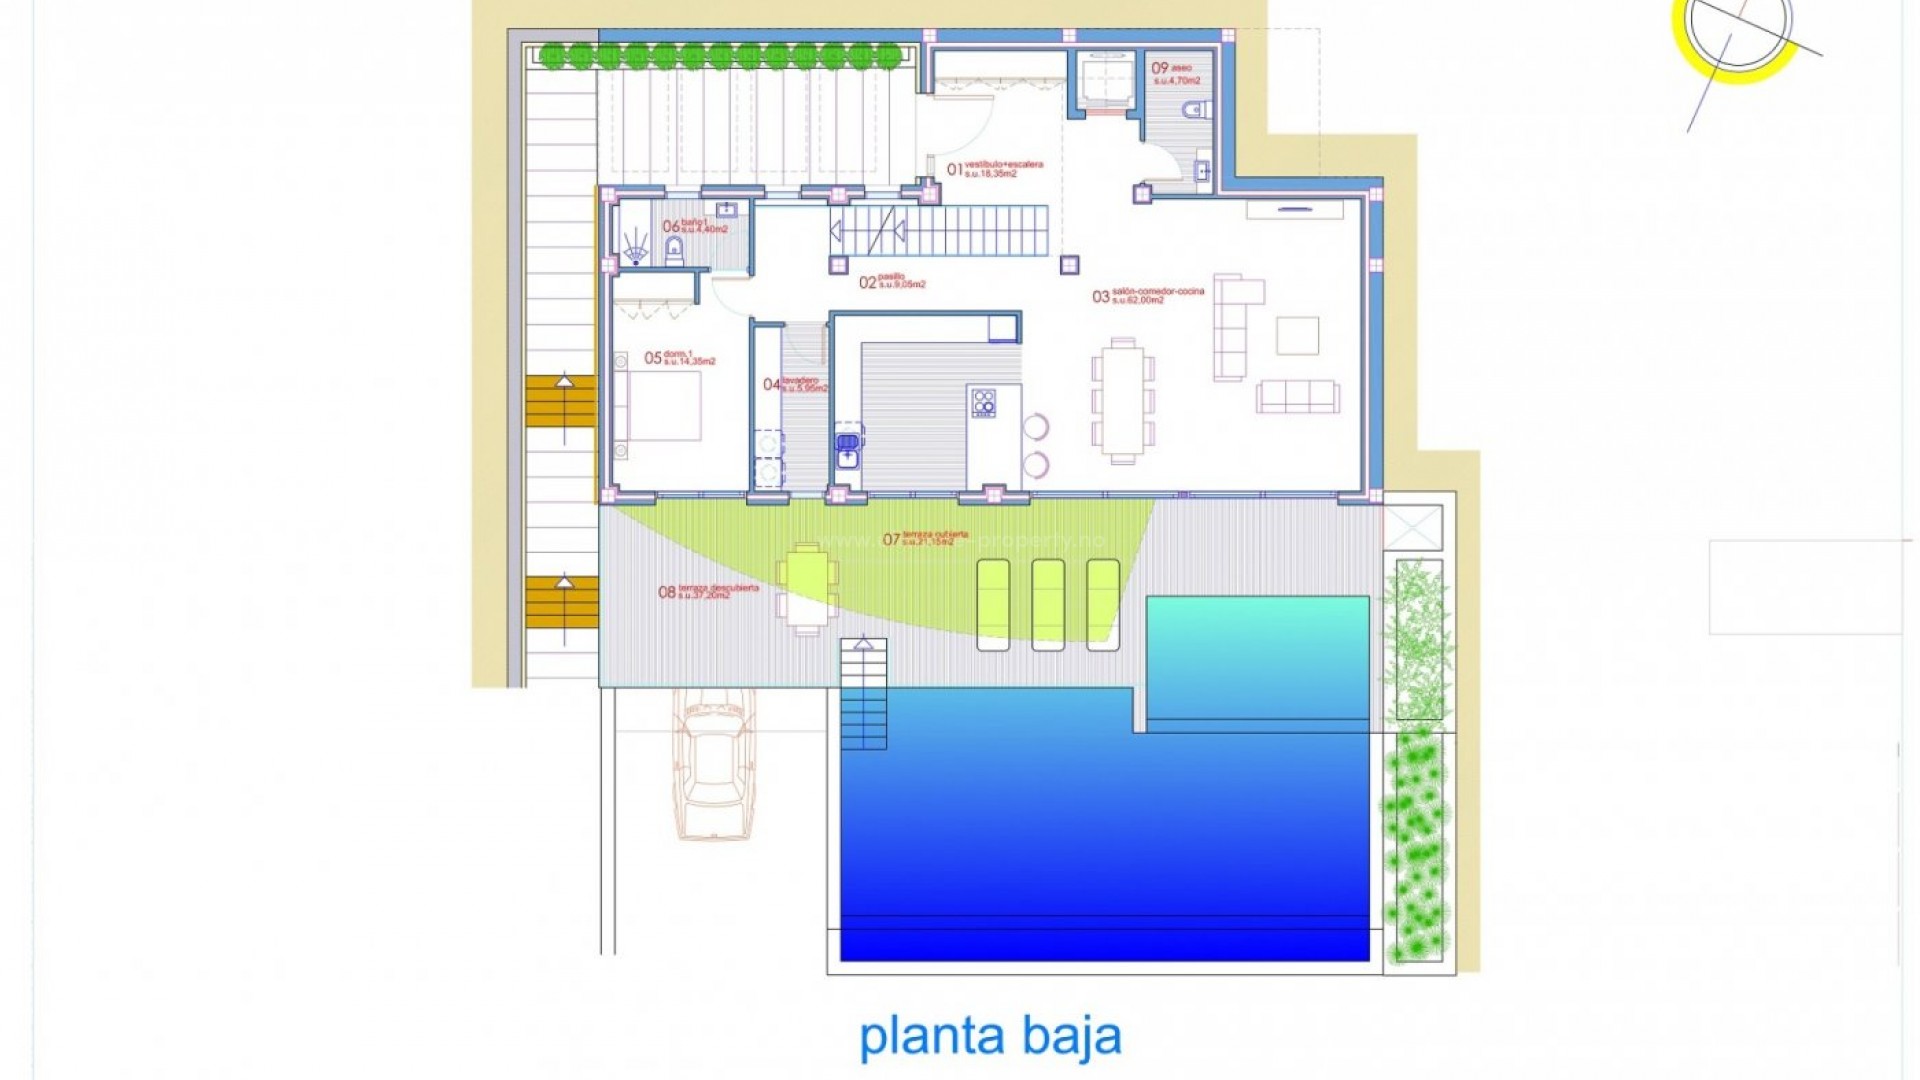 Luksus-villa i Altea med 4 romslige soverom og 5 bad, terrasse på baksiden av eiendommen og et stort bassengterrasse foran med evighetsbasseng